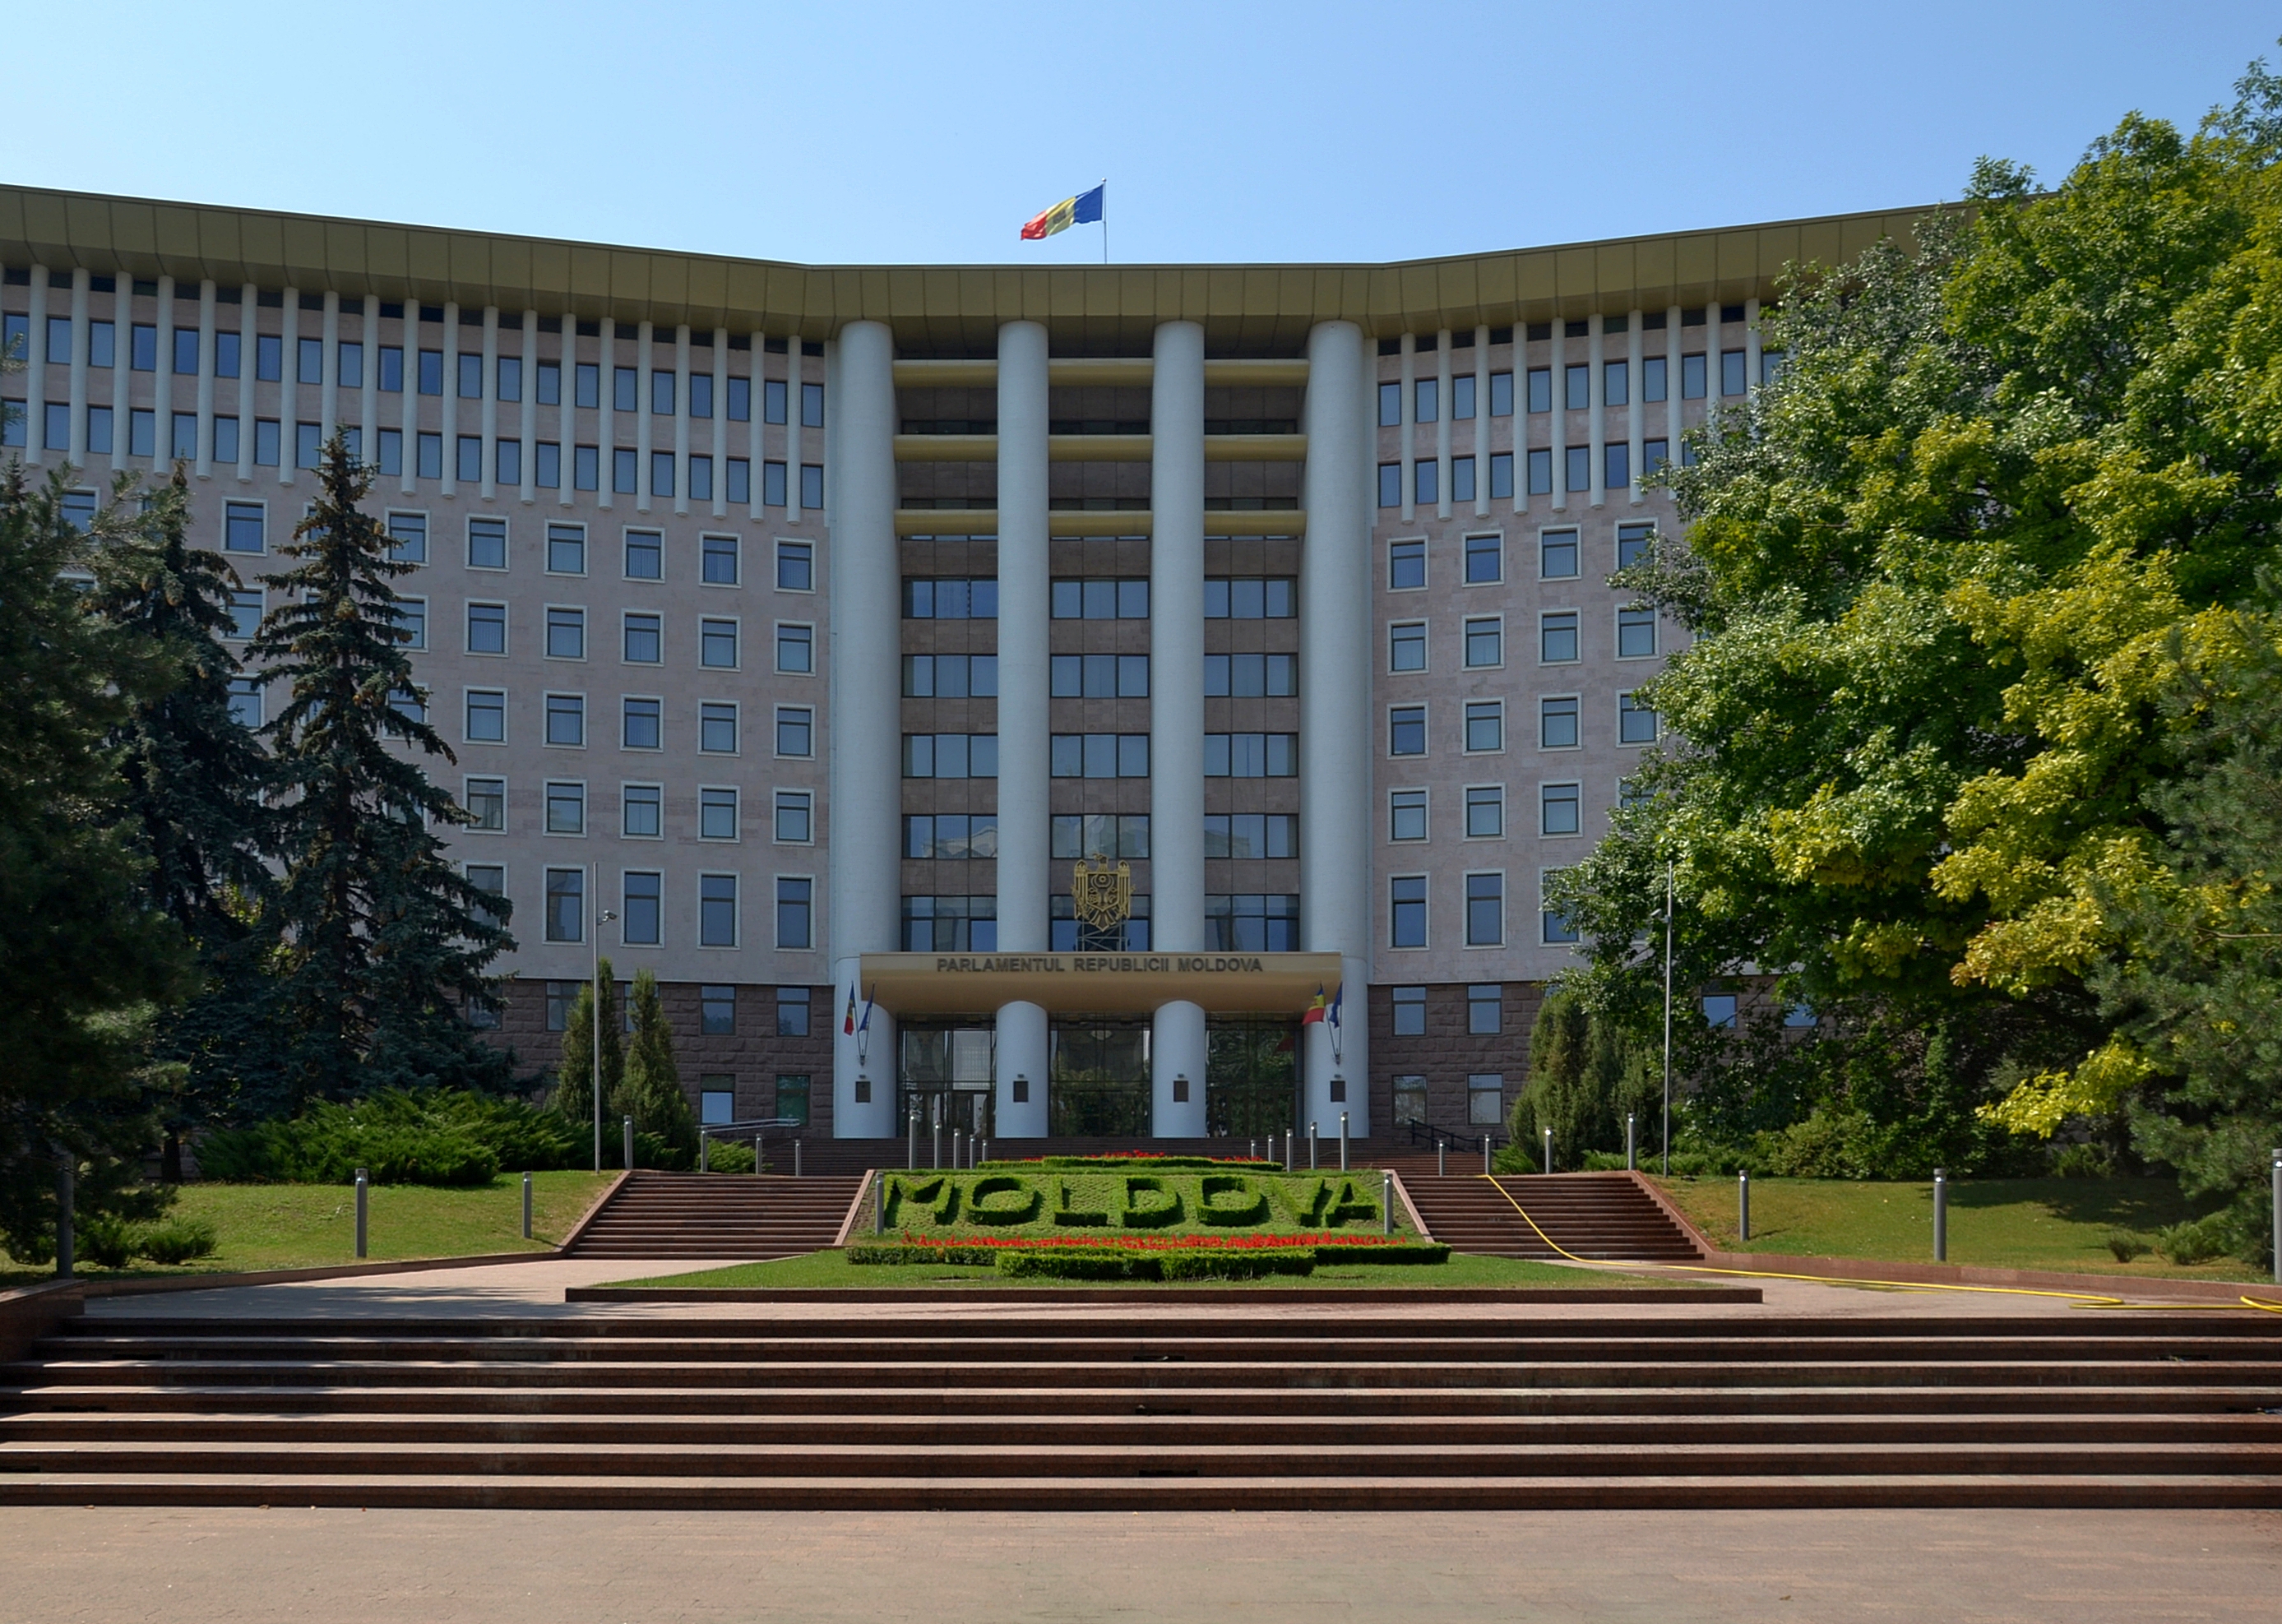 Parliament in Chișinău, Moldova